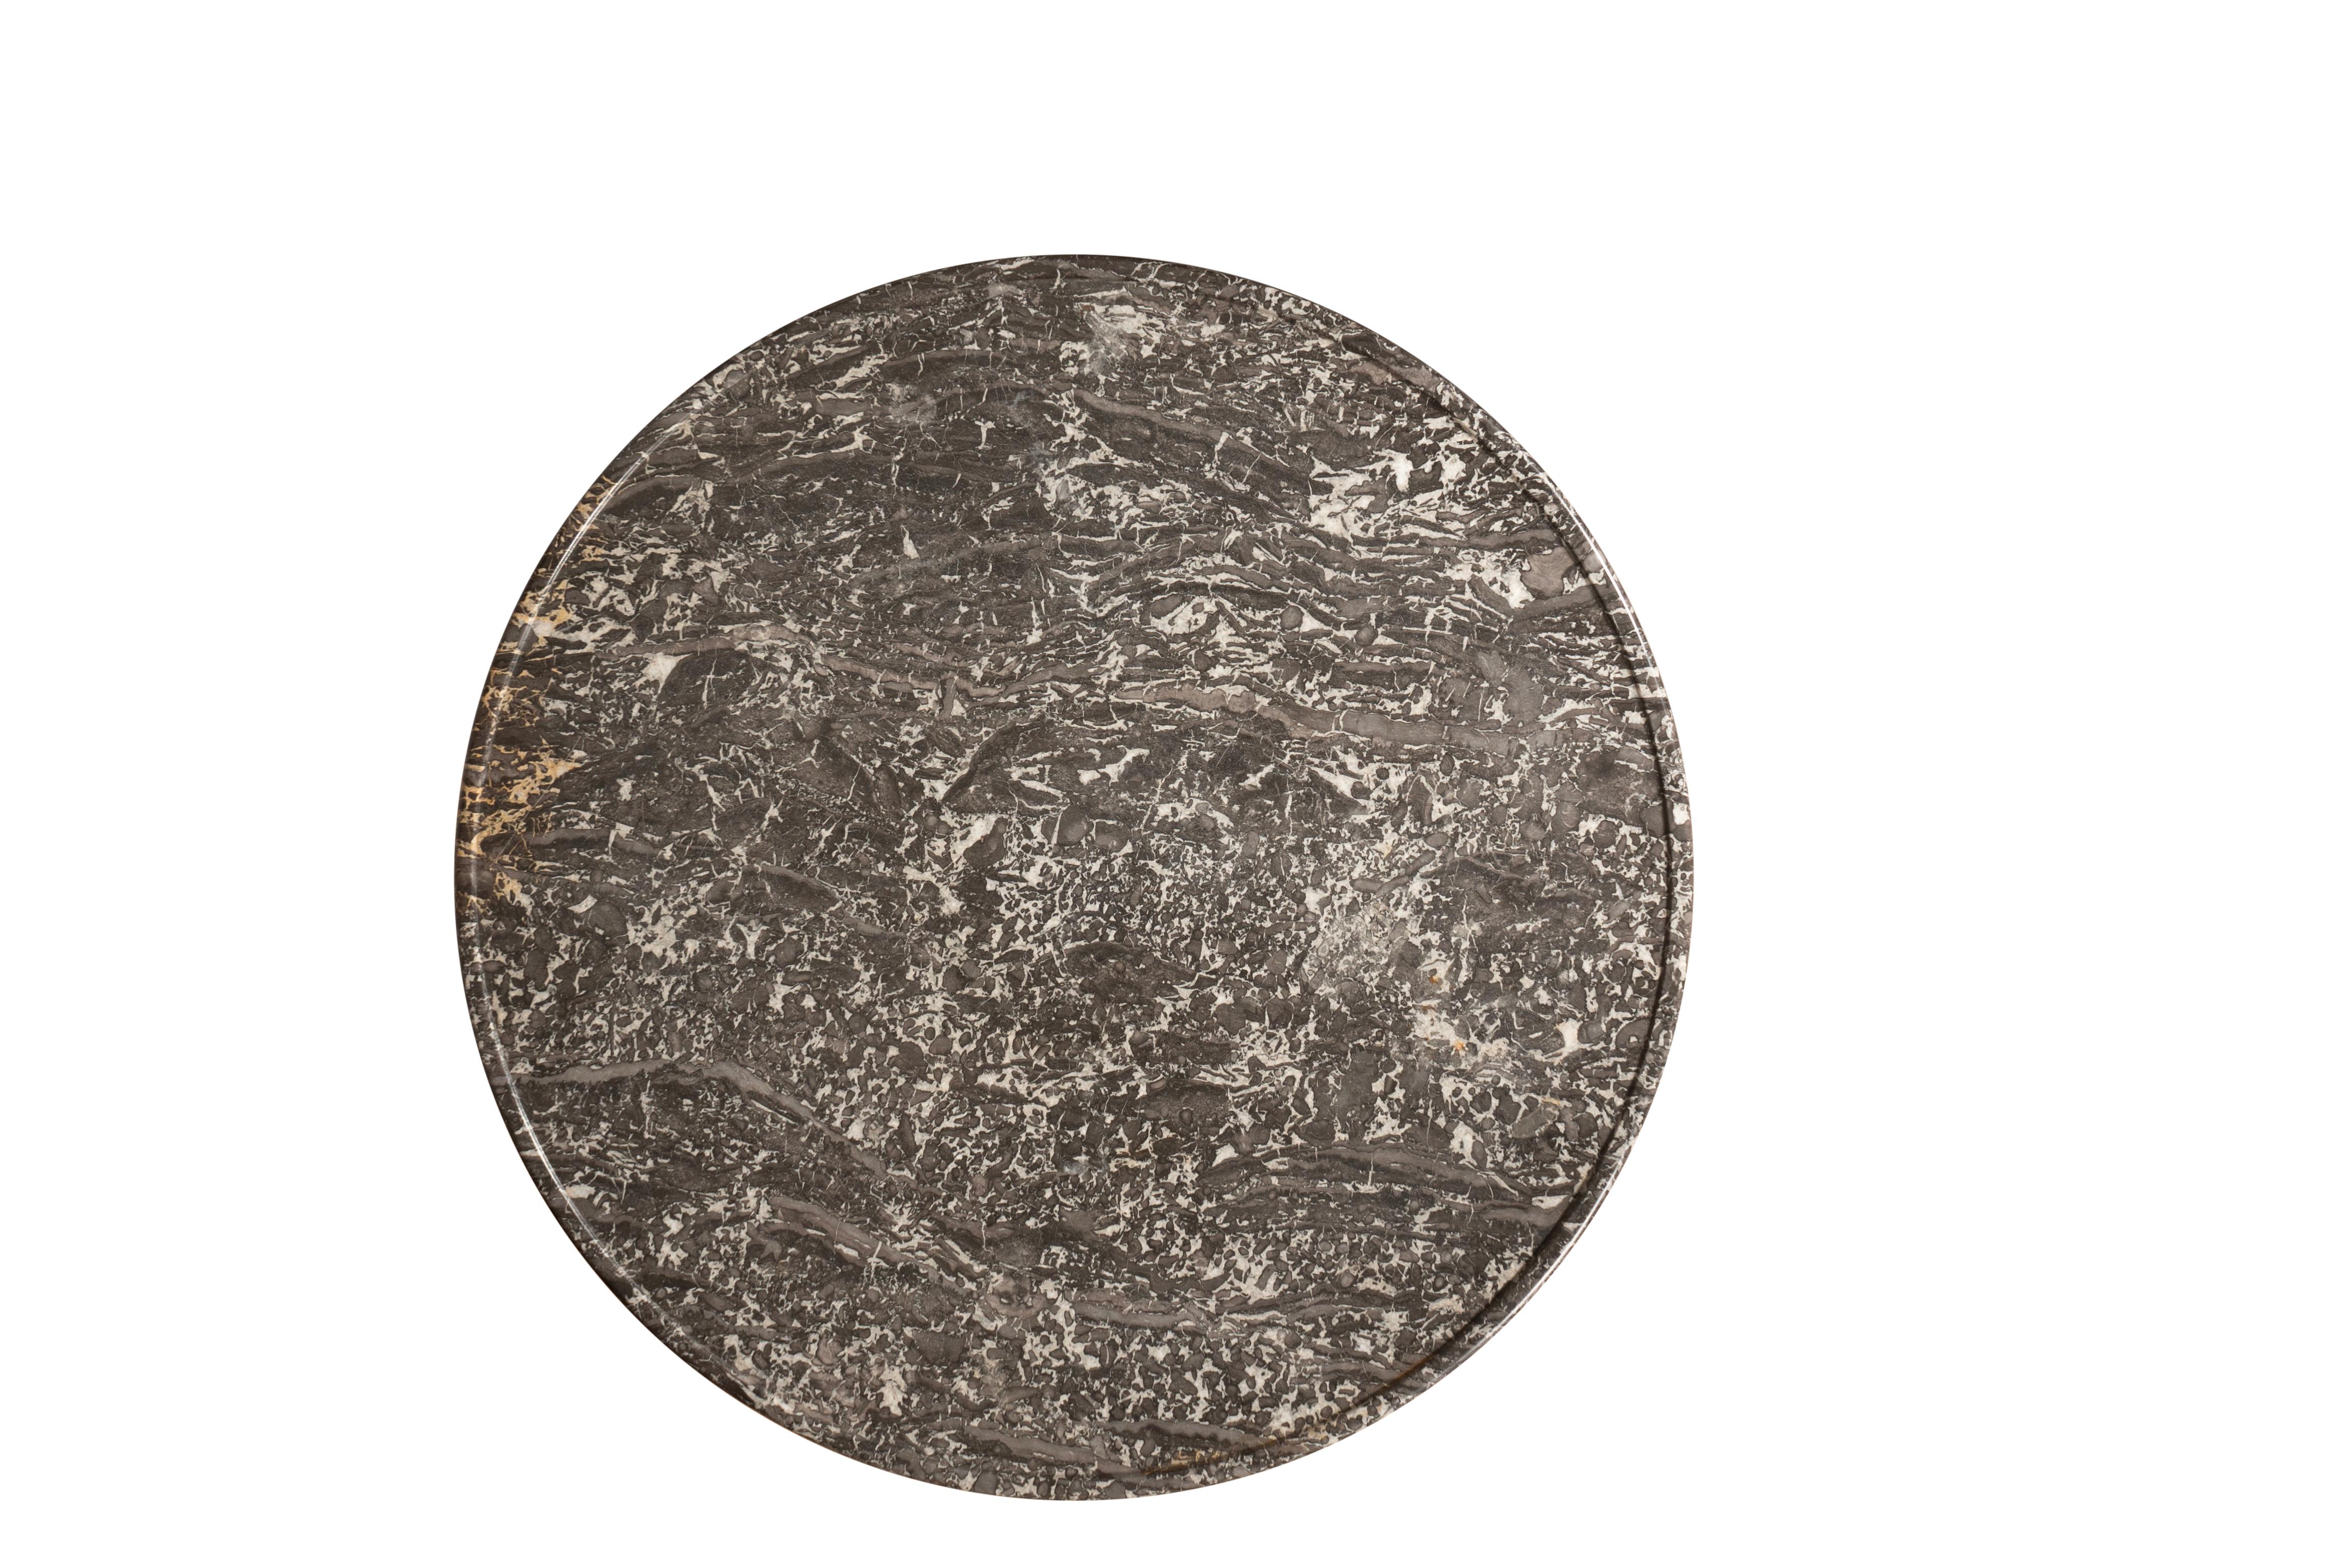 Kreisförmige Platte aus grauem und weißem St.-Anna-Marmor mit gewölbter Oberfläche und entsprechendem Fries auf einer vasenförmigen Stütze und einem dreiteiligen Sockel mit geschnitzten vitruvianischen Spiralen und Tatzenfüßen.